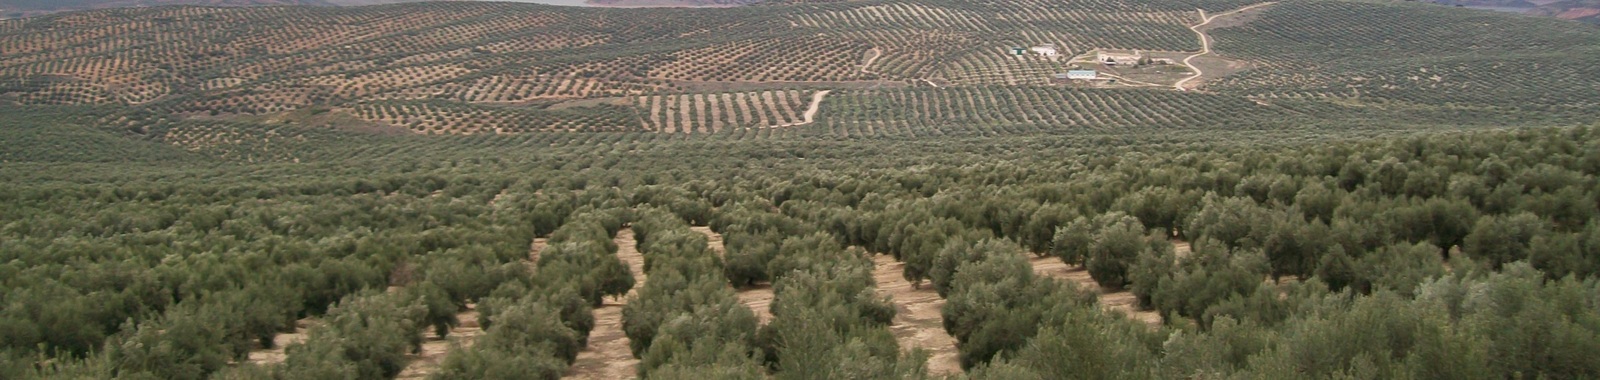 Influencia sobre el crecimiento del olivo